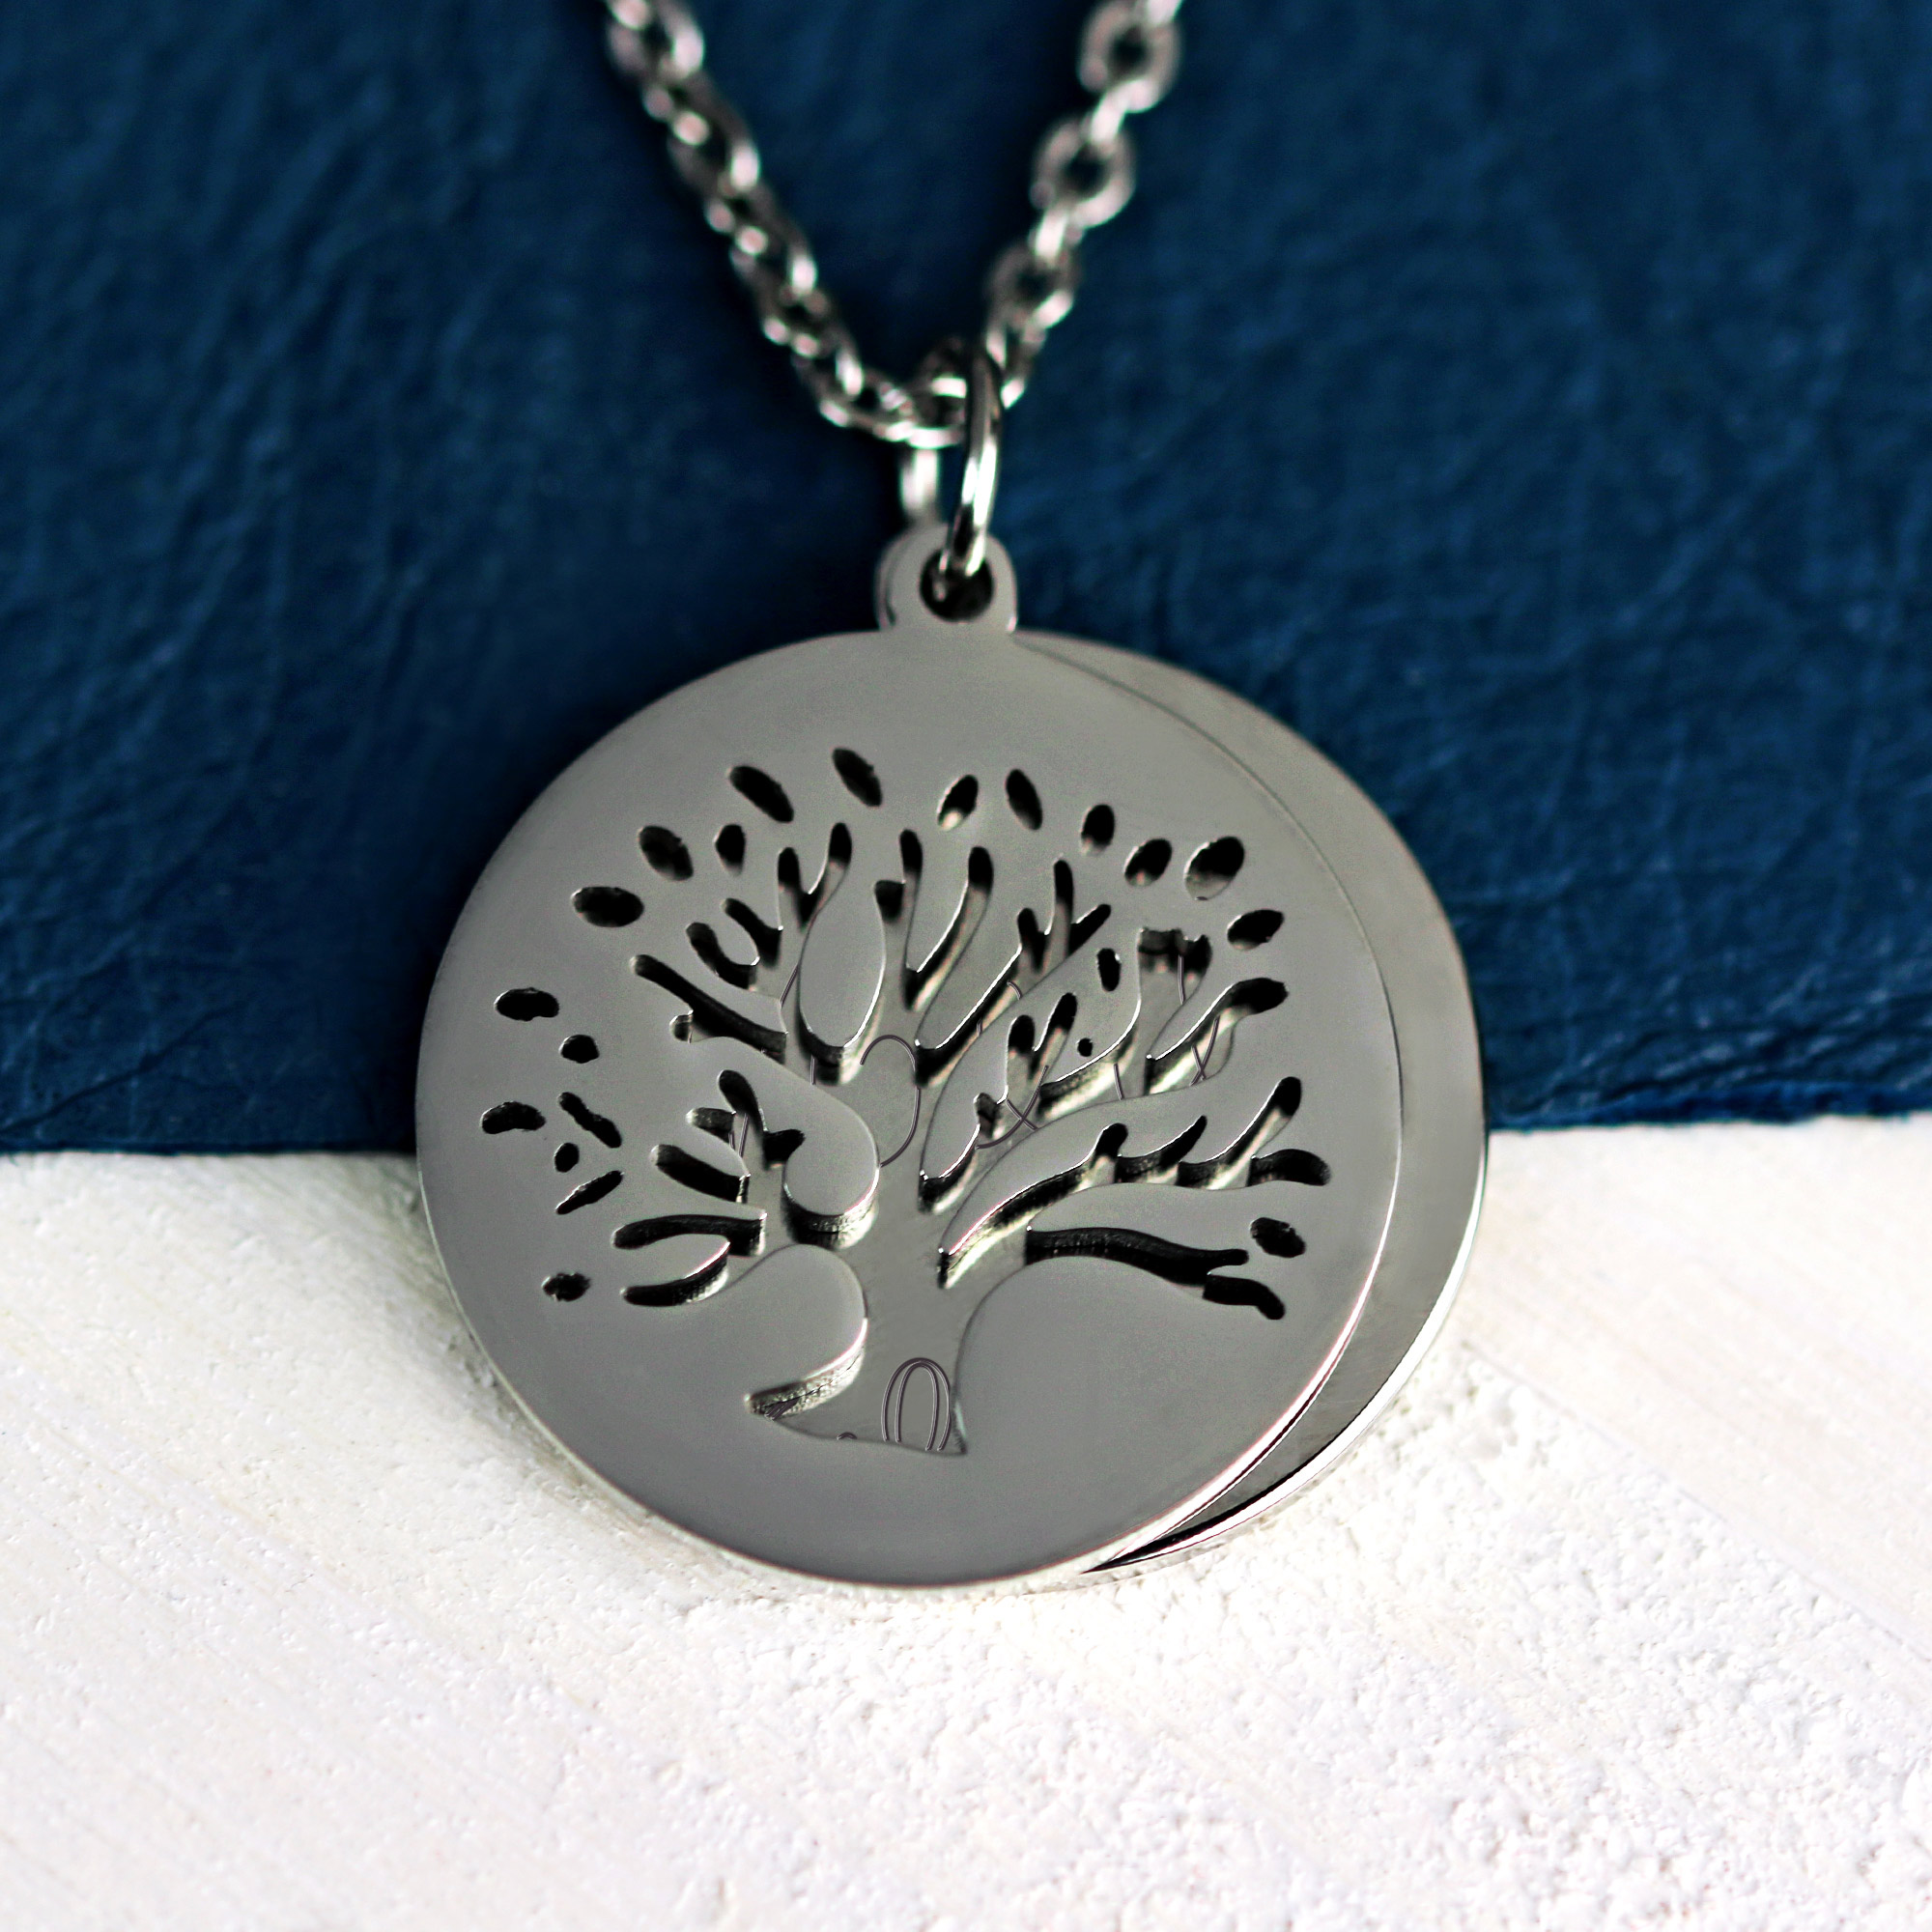 Halskette mit Gravur in Silber - Baum mit Initialen